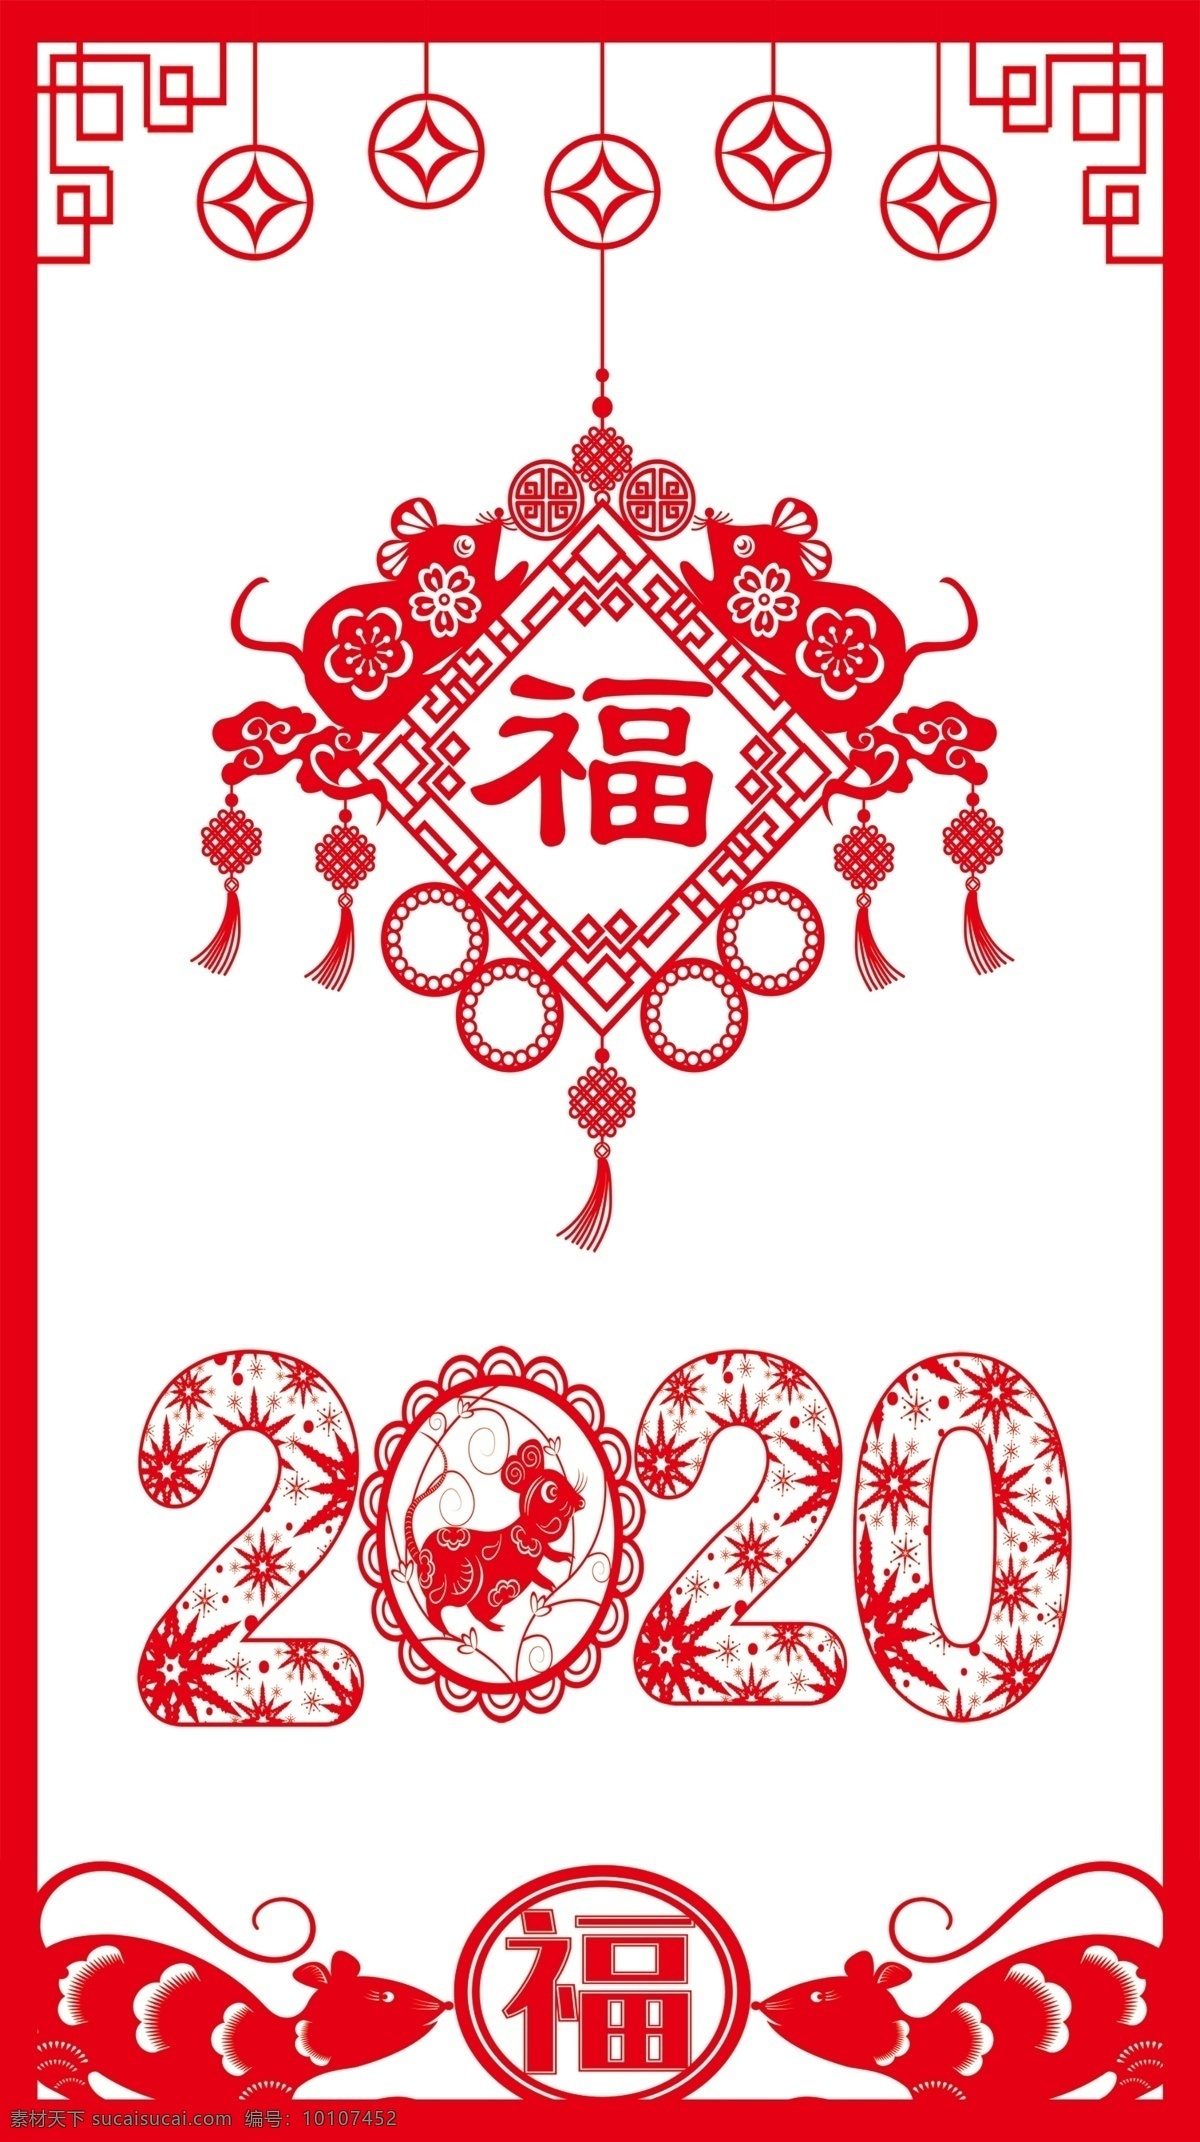 鼠年剪纸 剪纸 祝福 福字 2020年 老鼠 海报